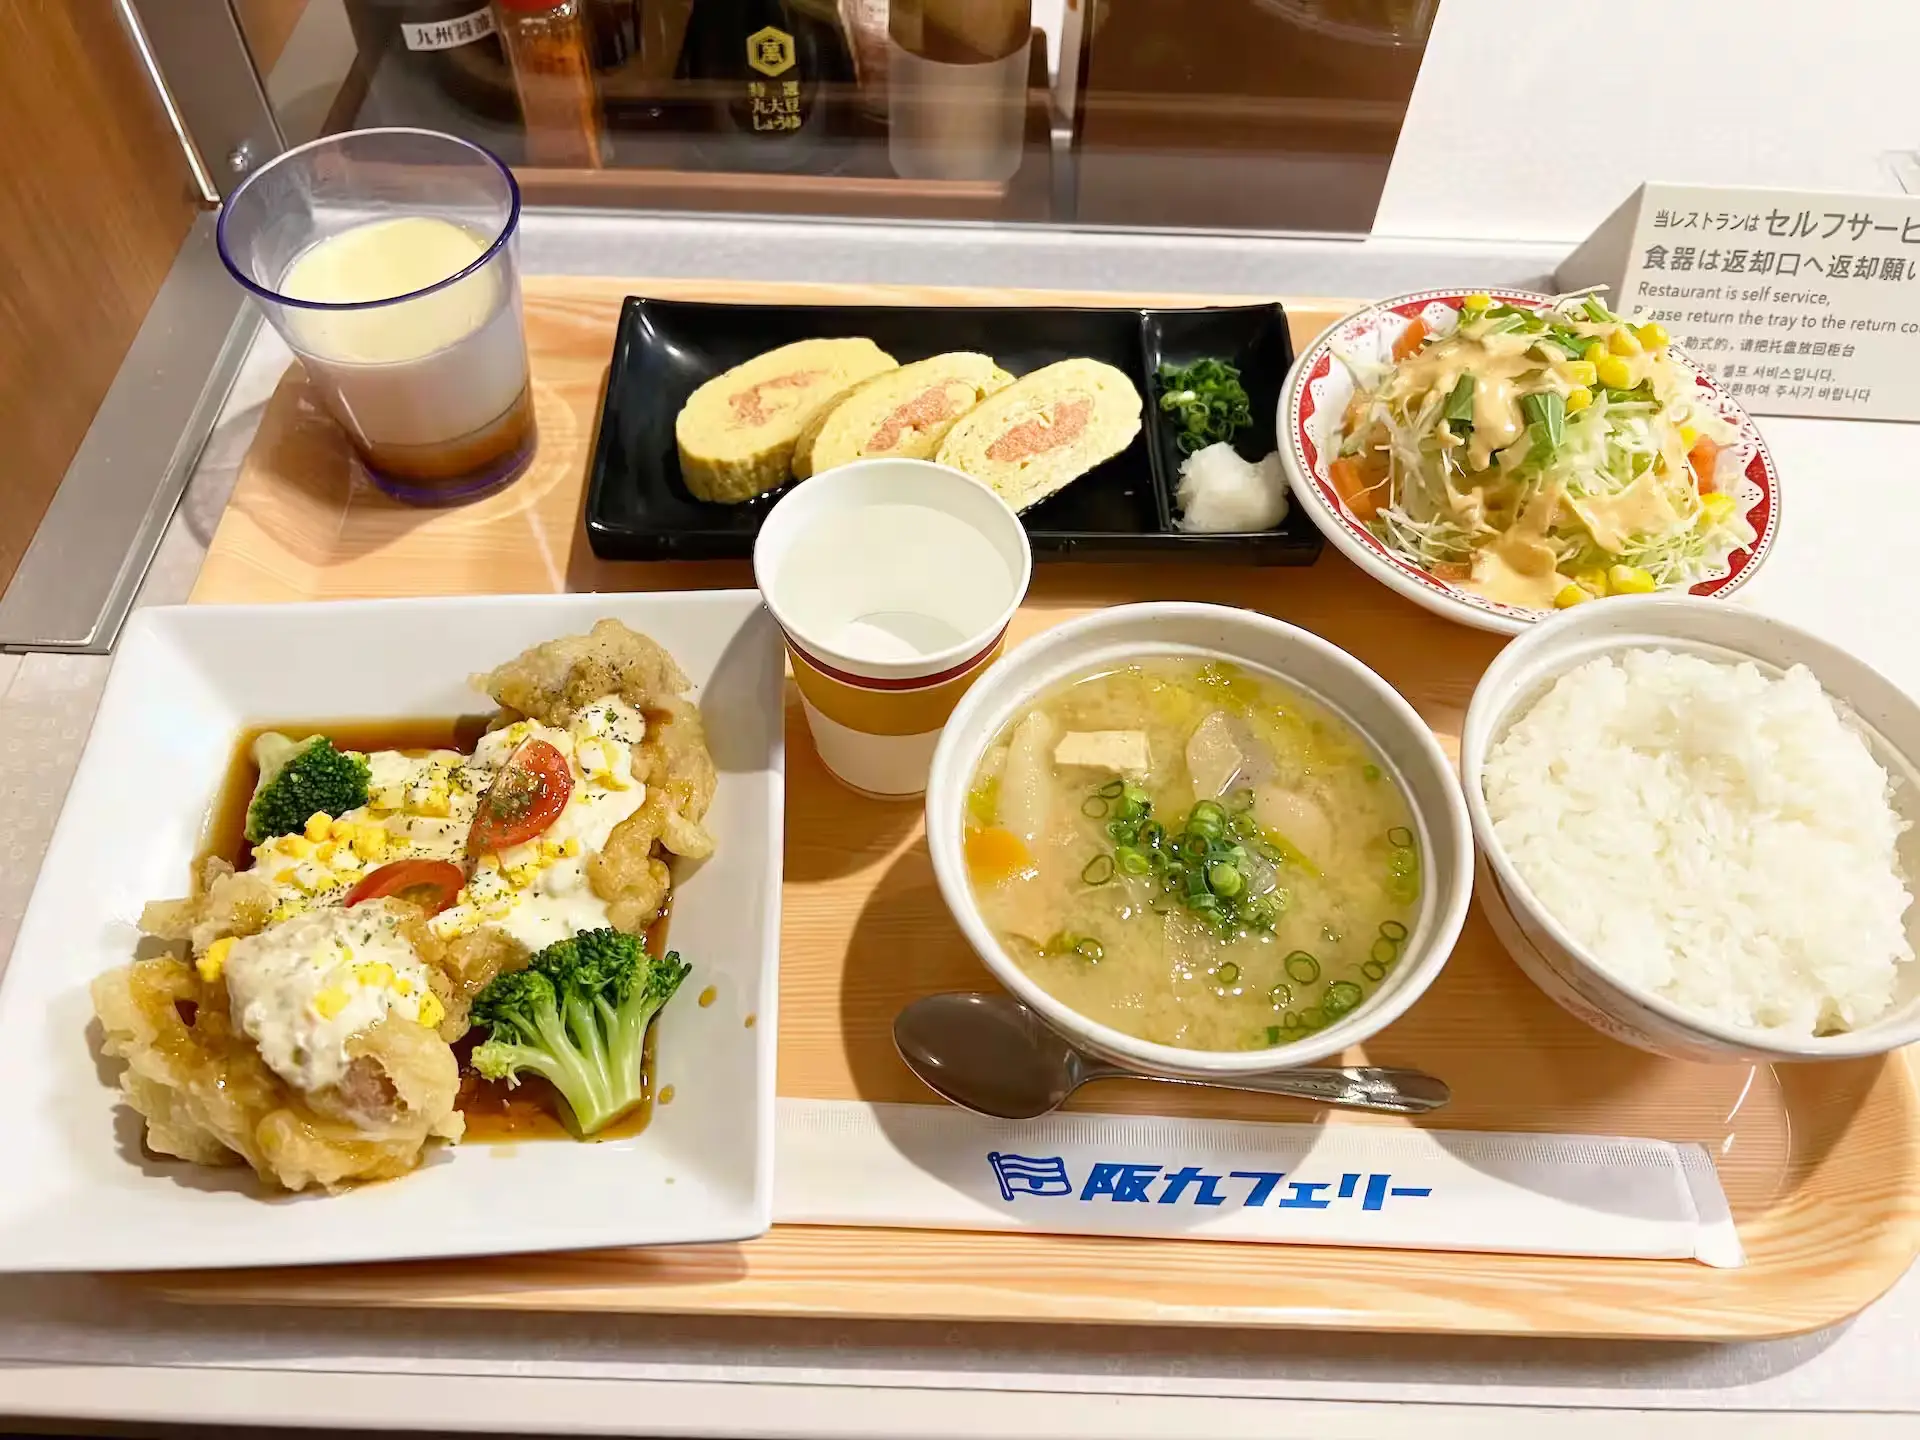 阪九フェリーやまと船内レストランの夕食が載ったプレート